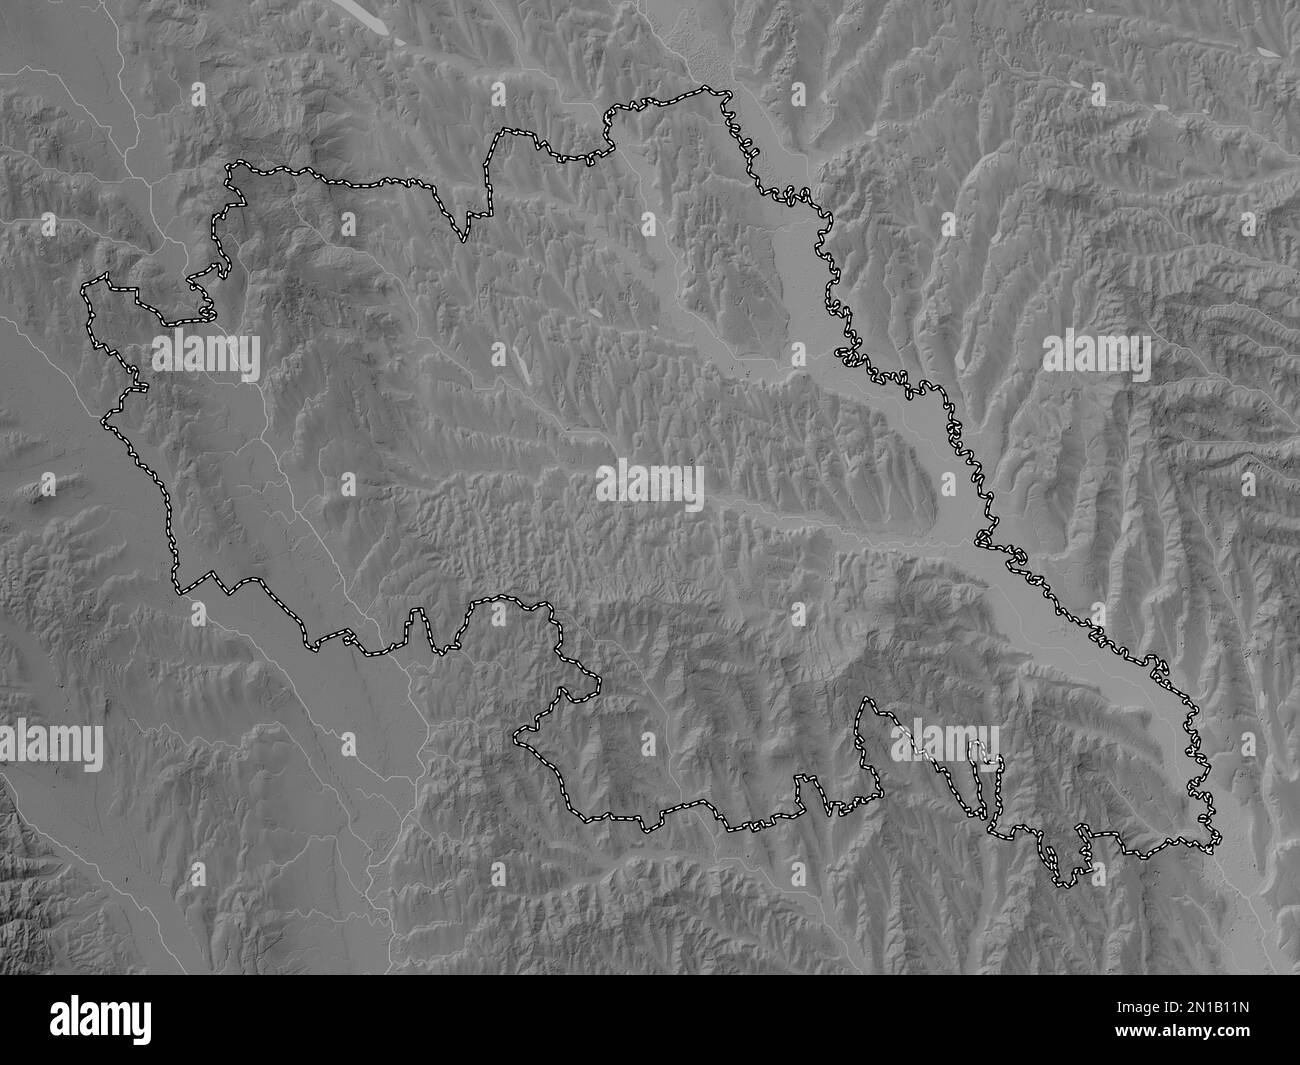 Iasi, contea della Romania. Mappa in scala di grigi con laghi e fiumi Foto Stock